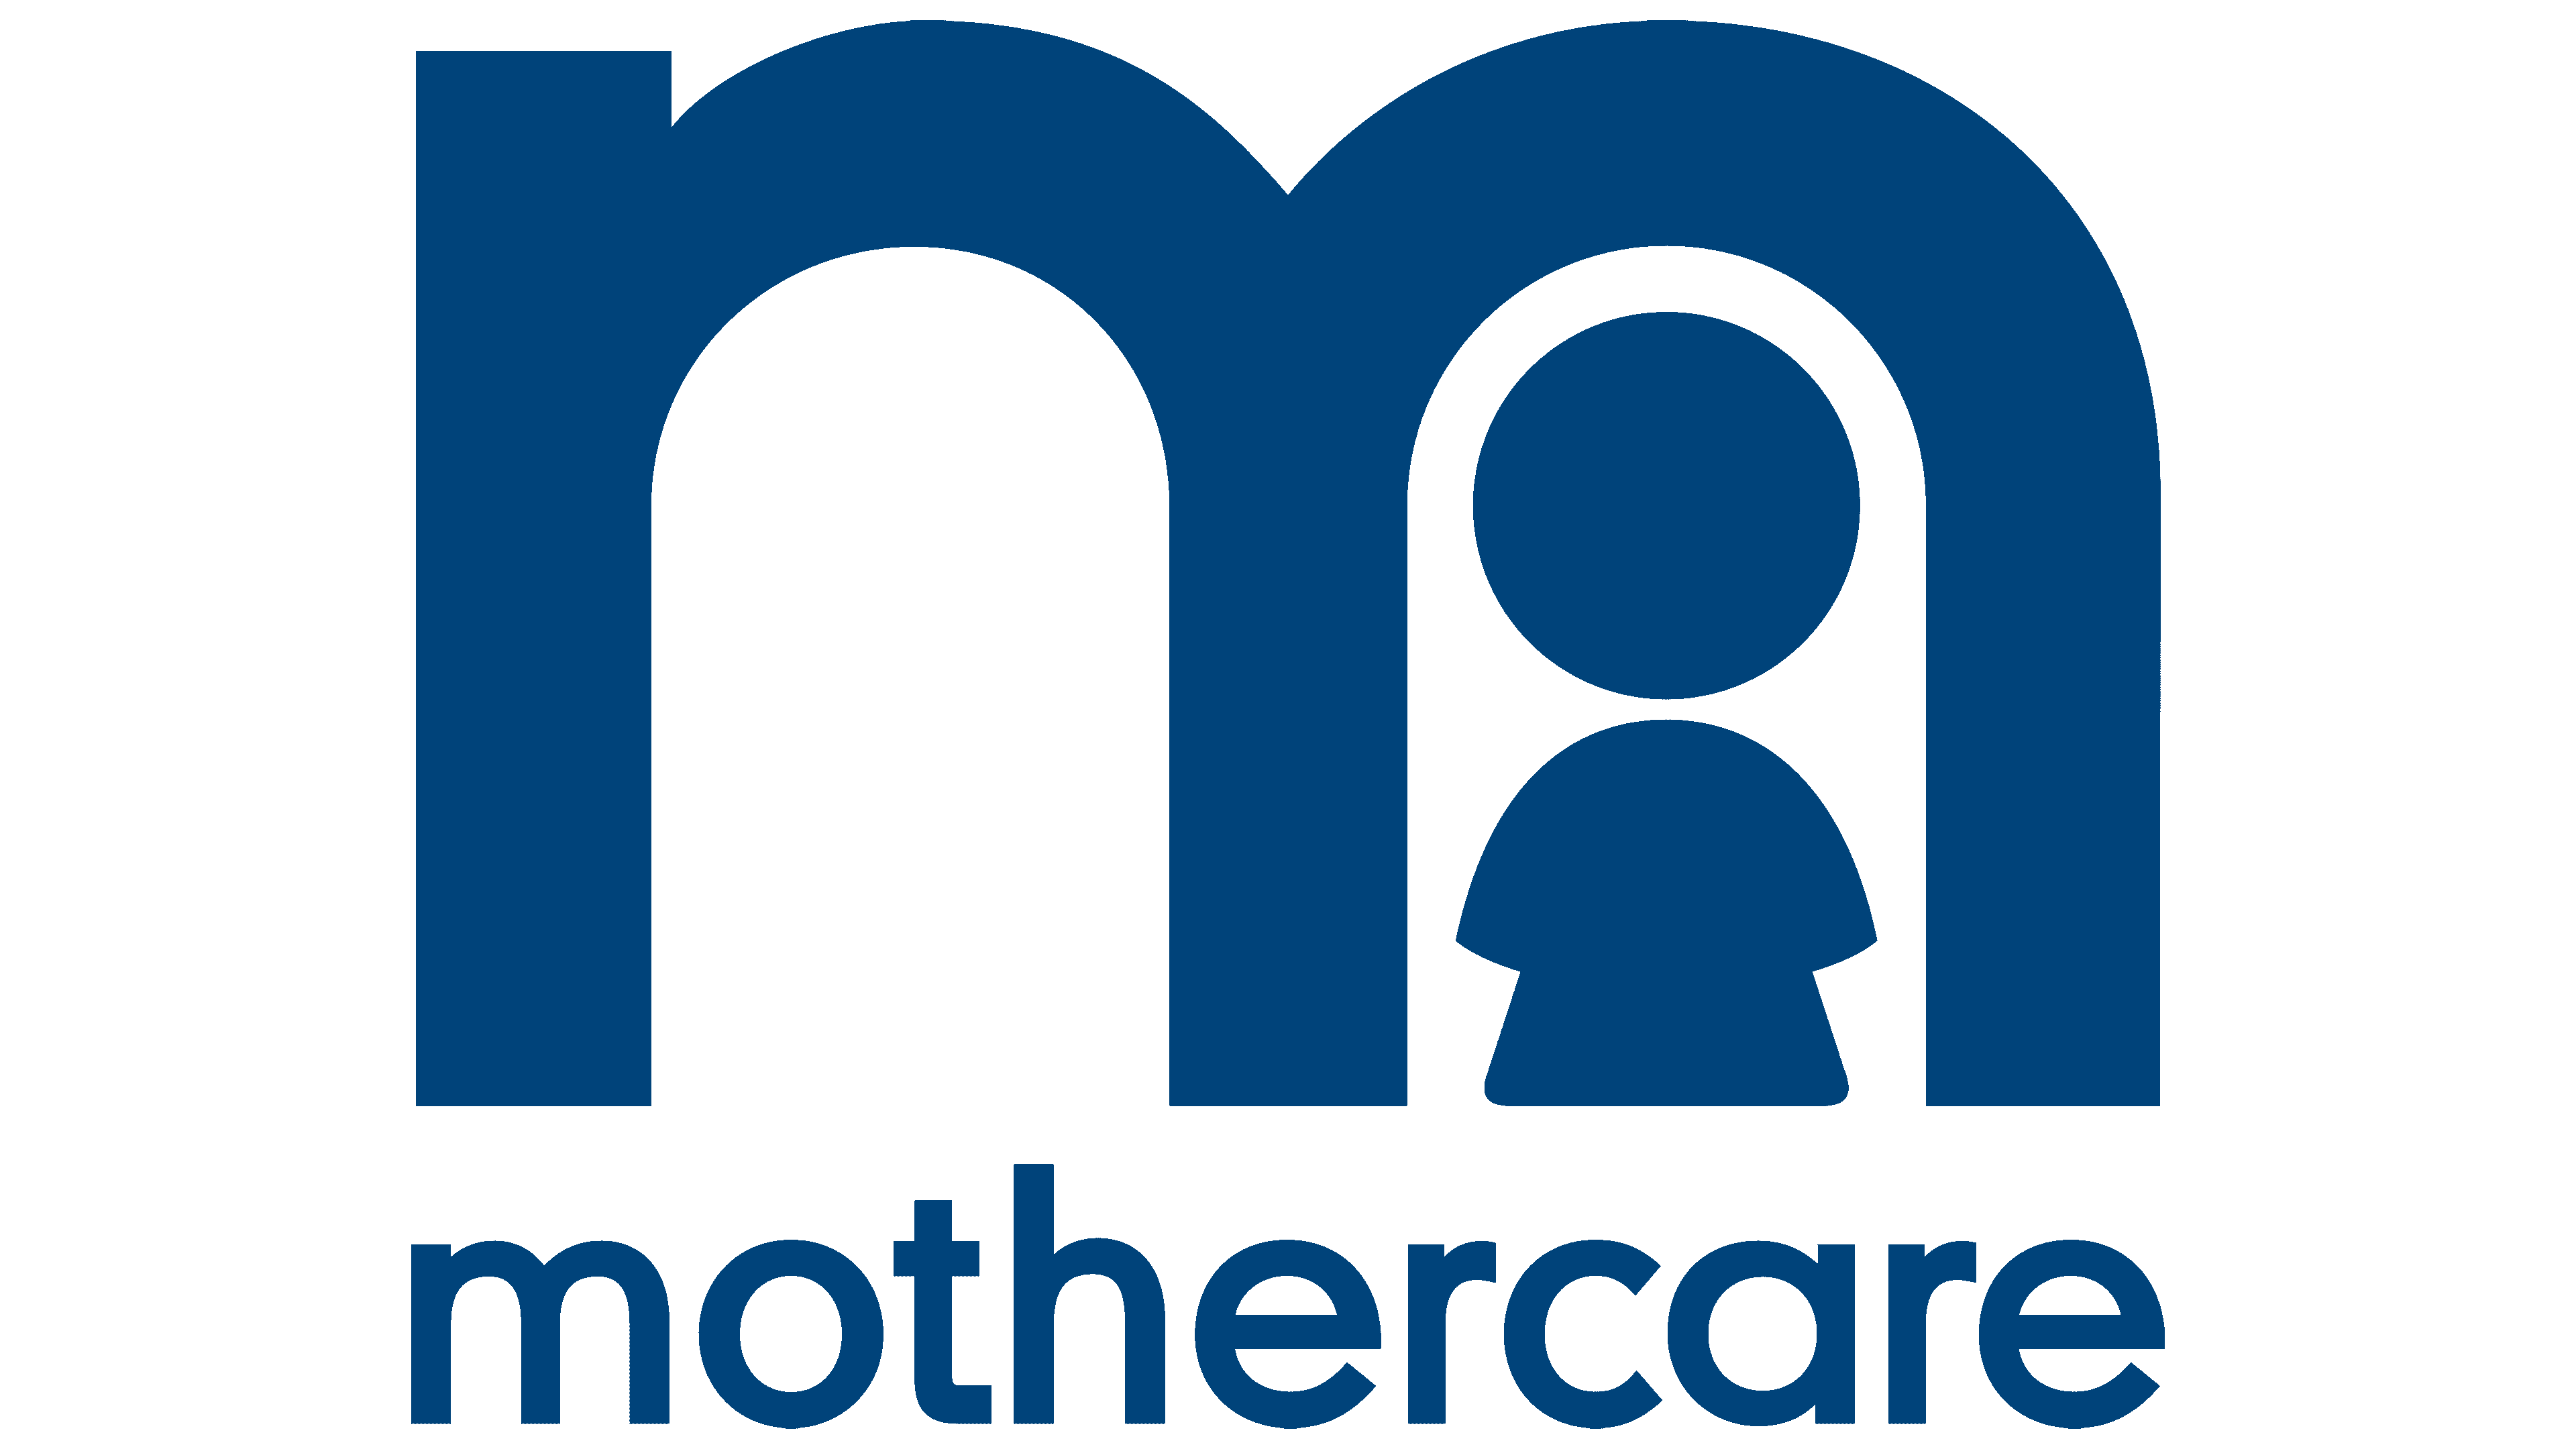 mothercarelogo